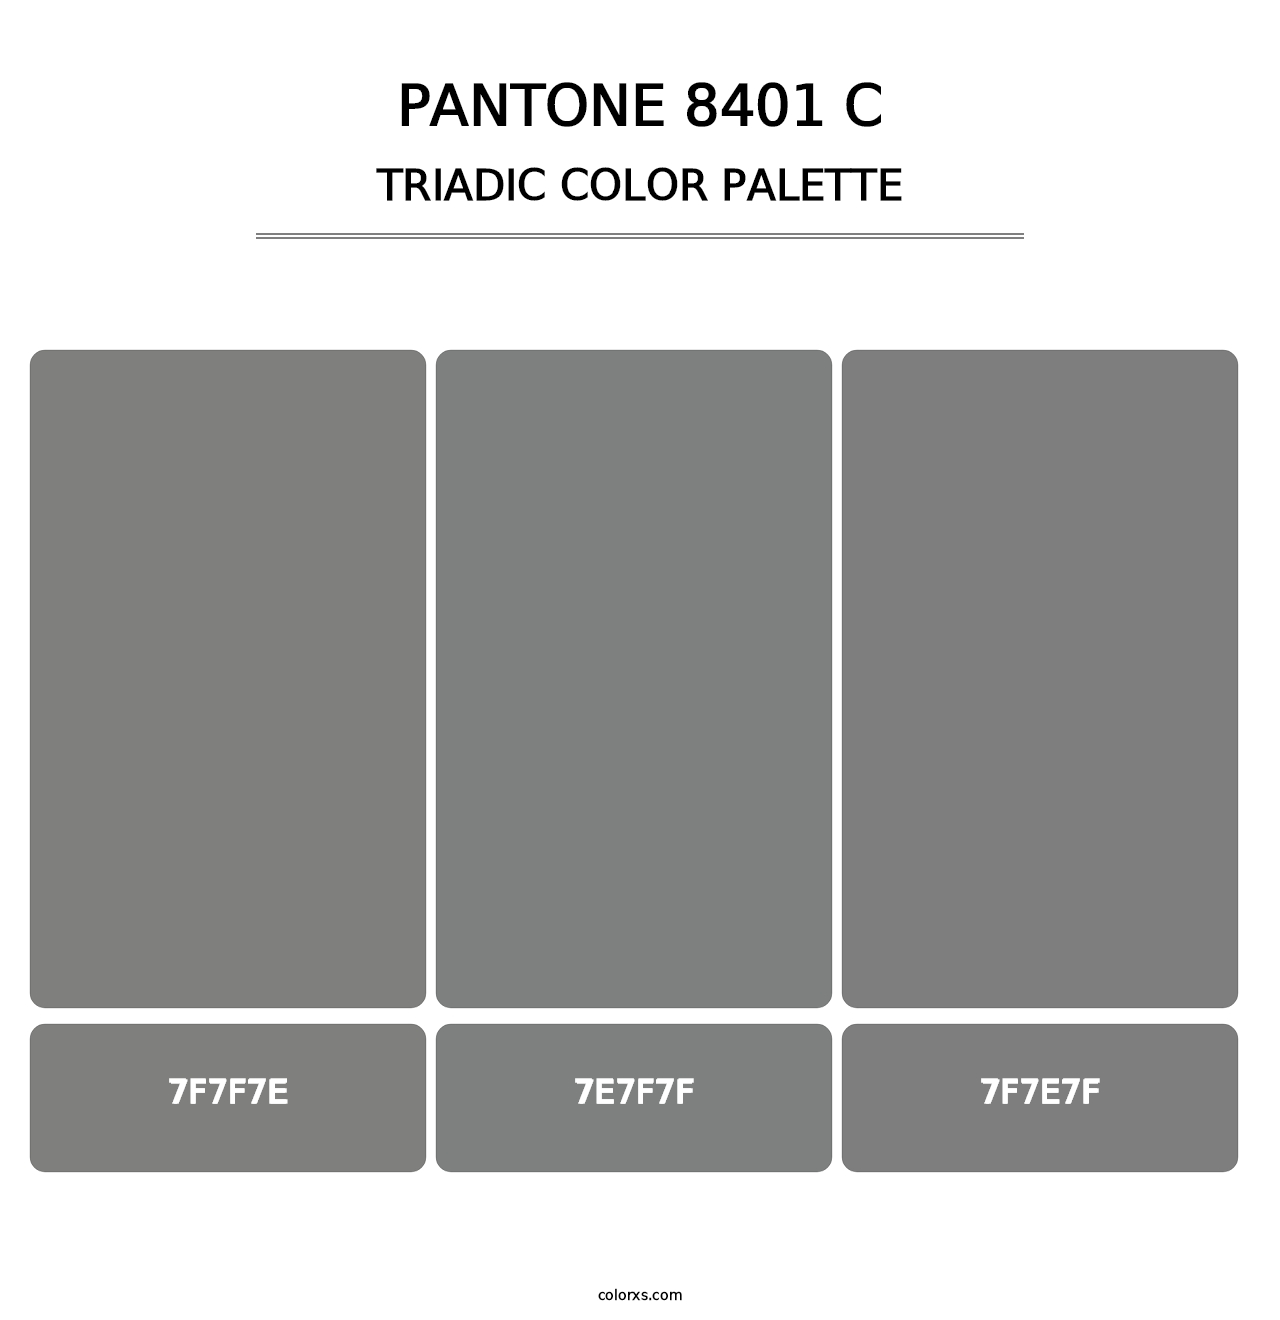 PANTONE 8401 C - Triadic Color Palette